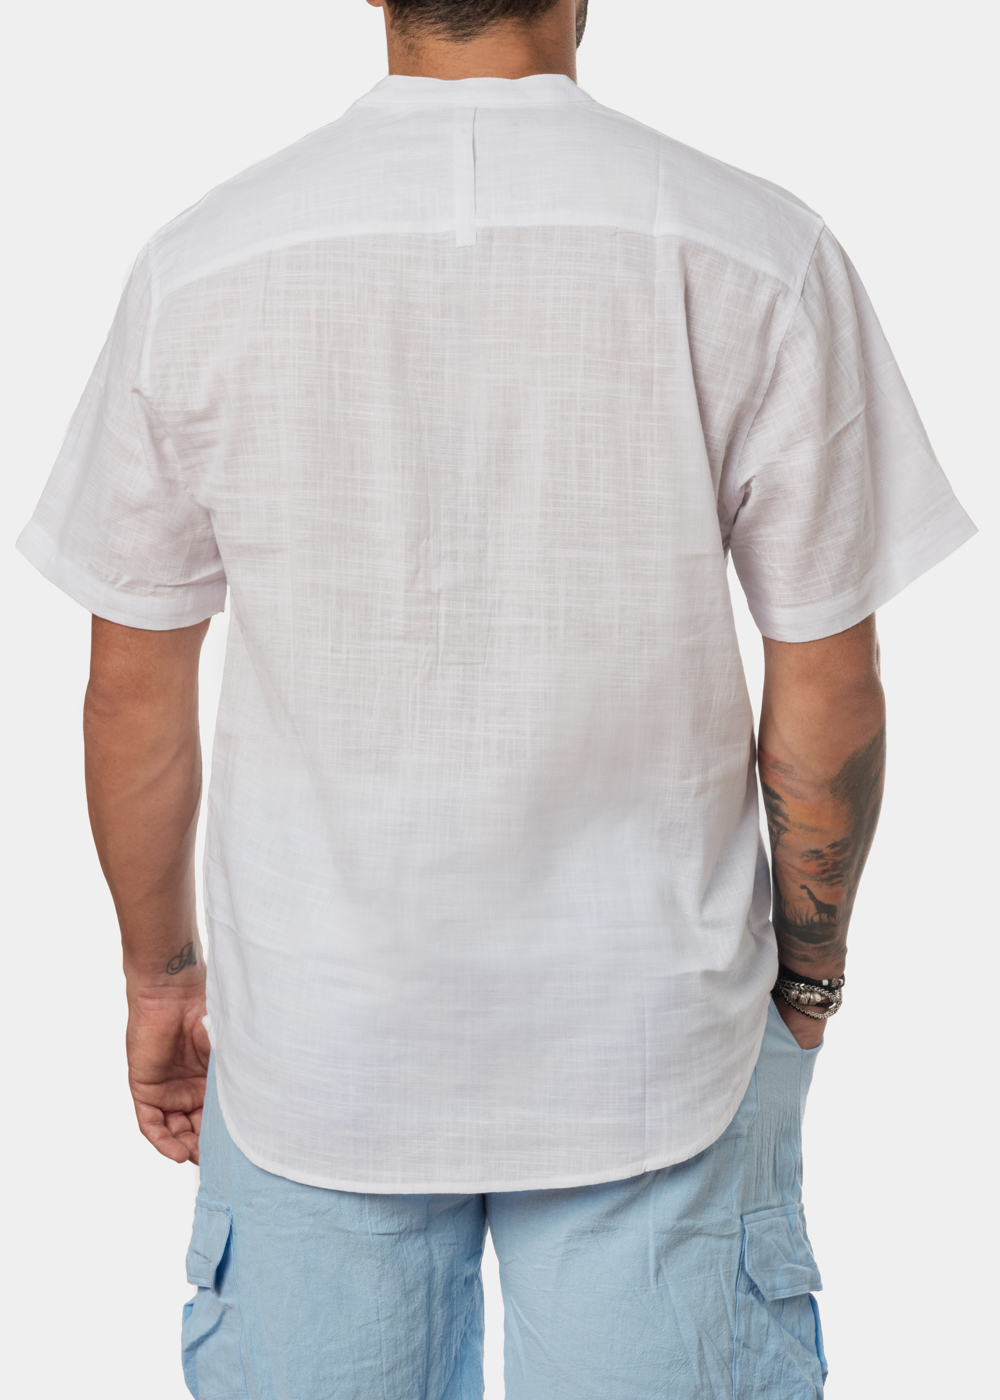 White mandarin shirt w/ short sleeve